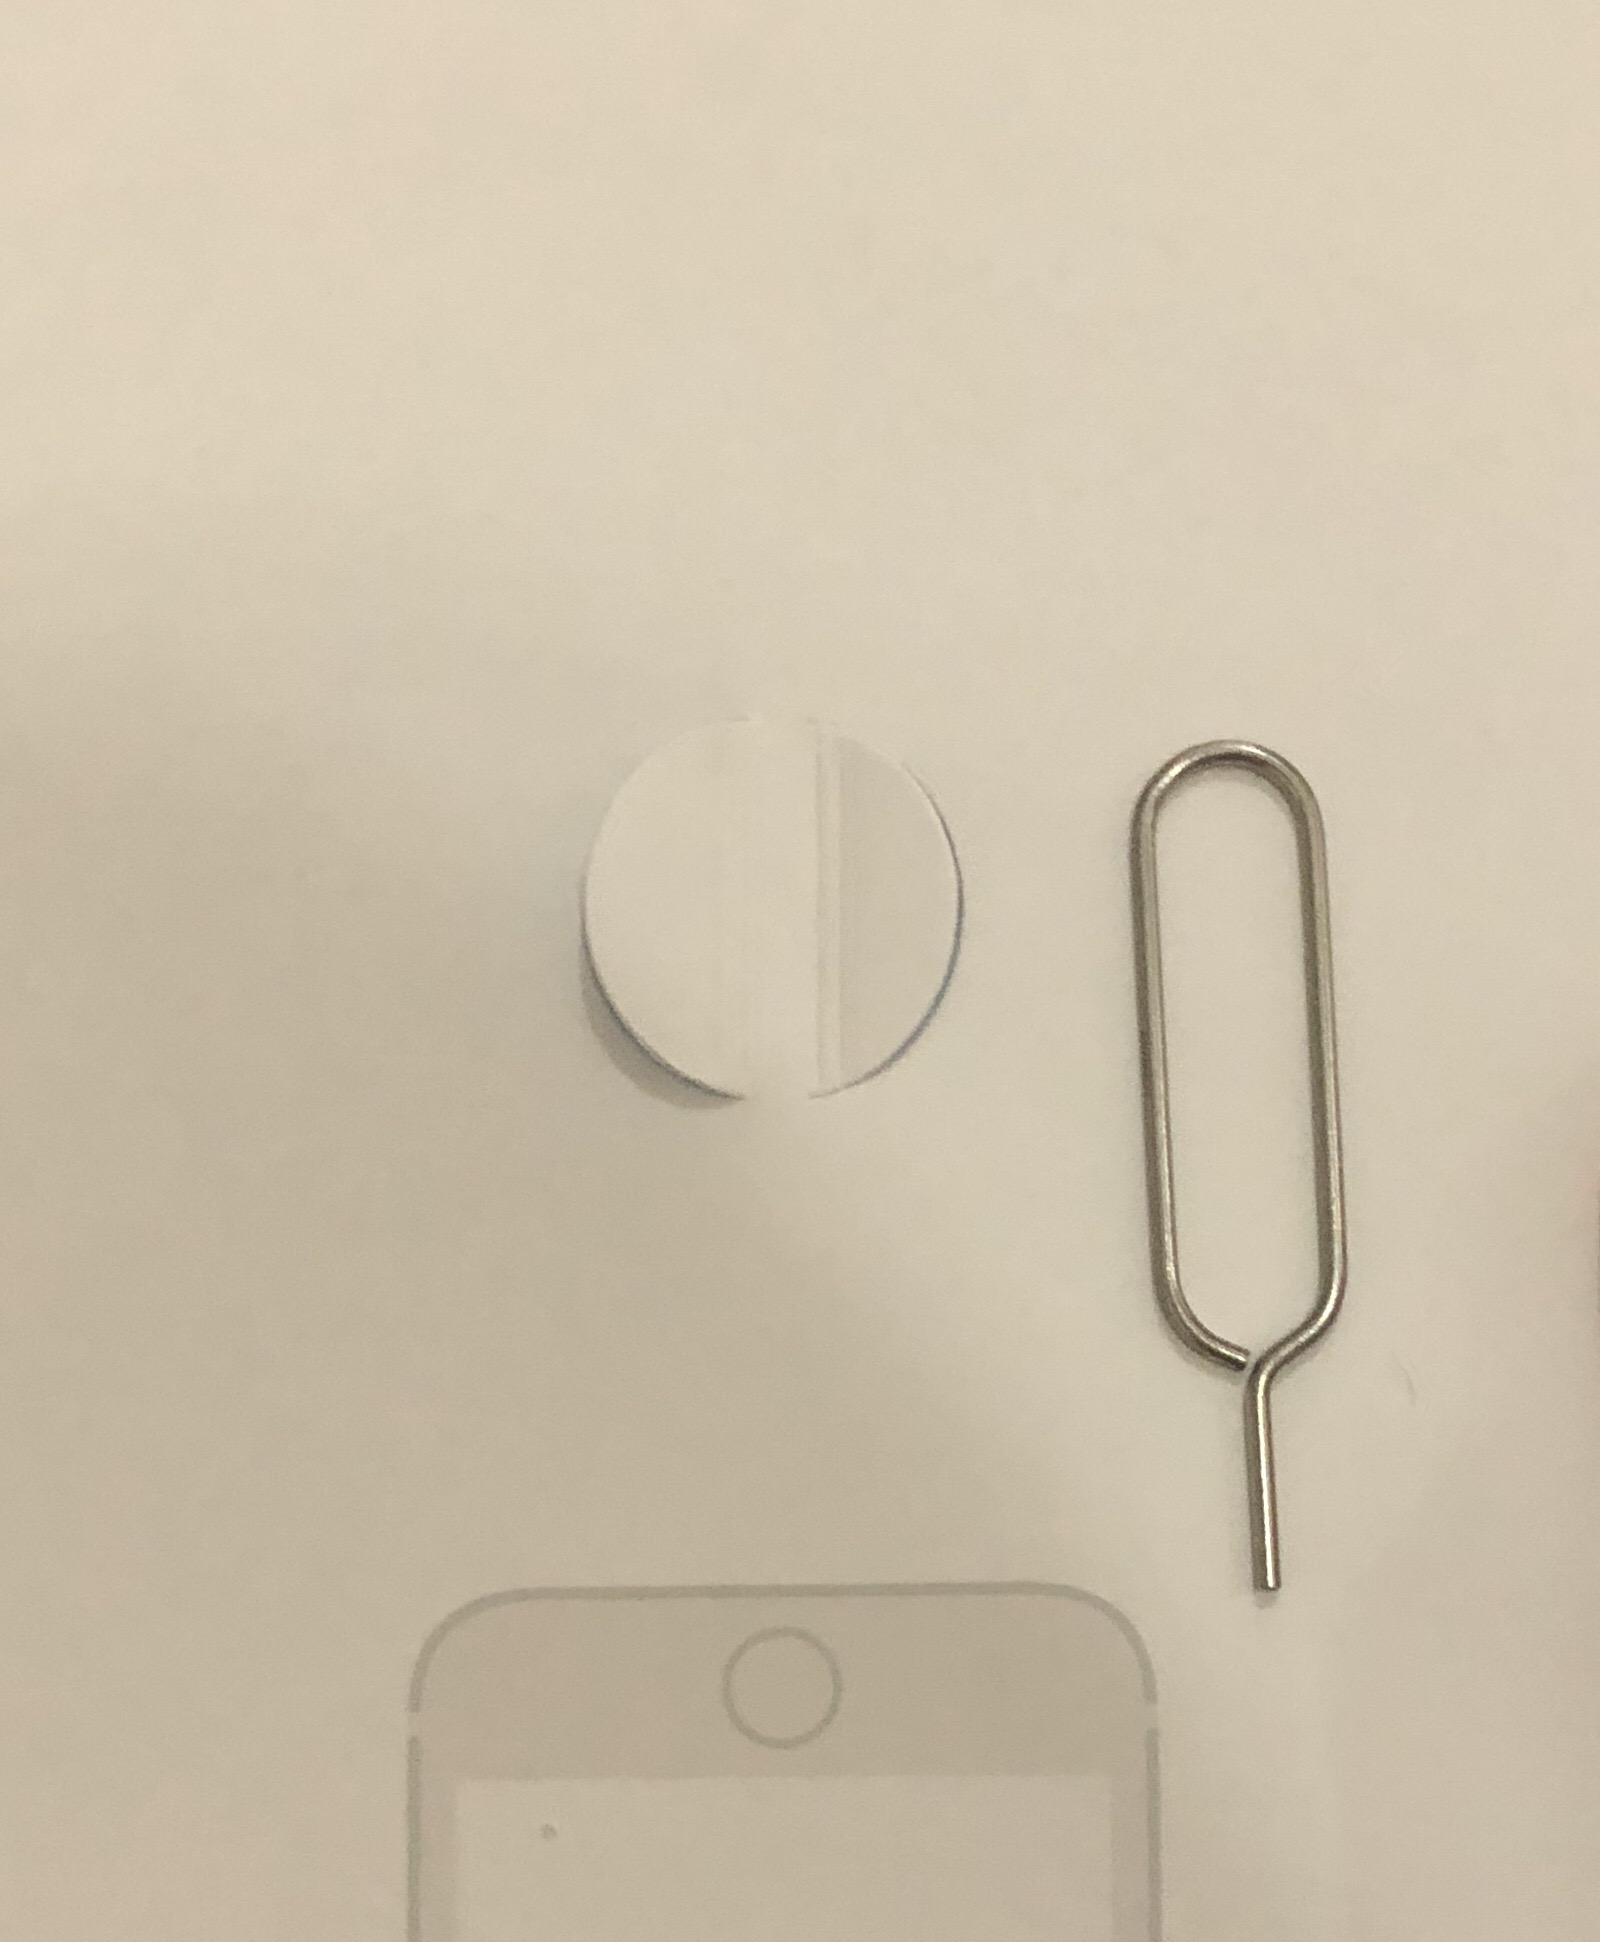 Pin on Apple